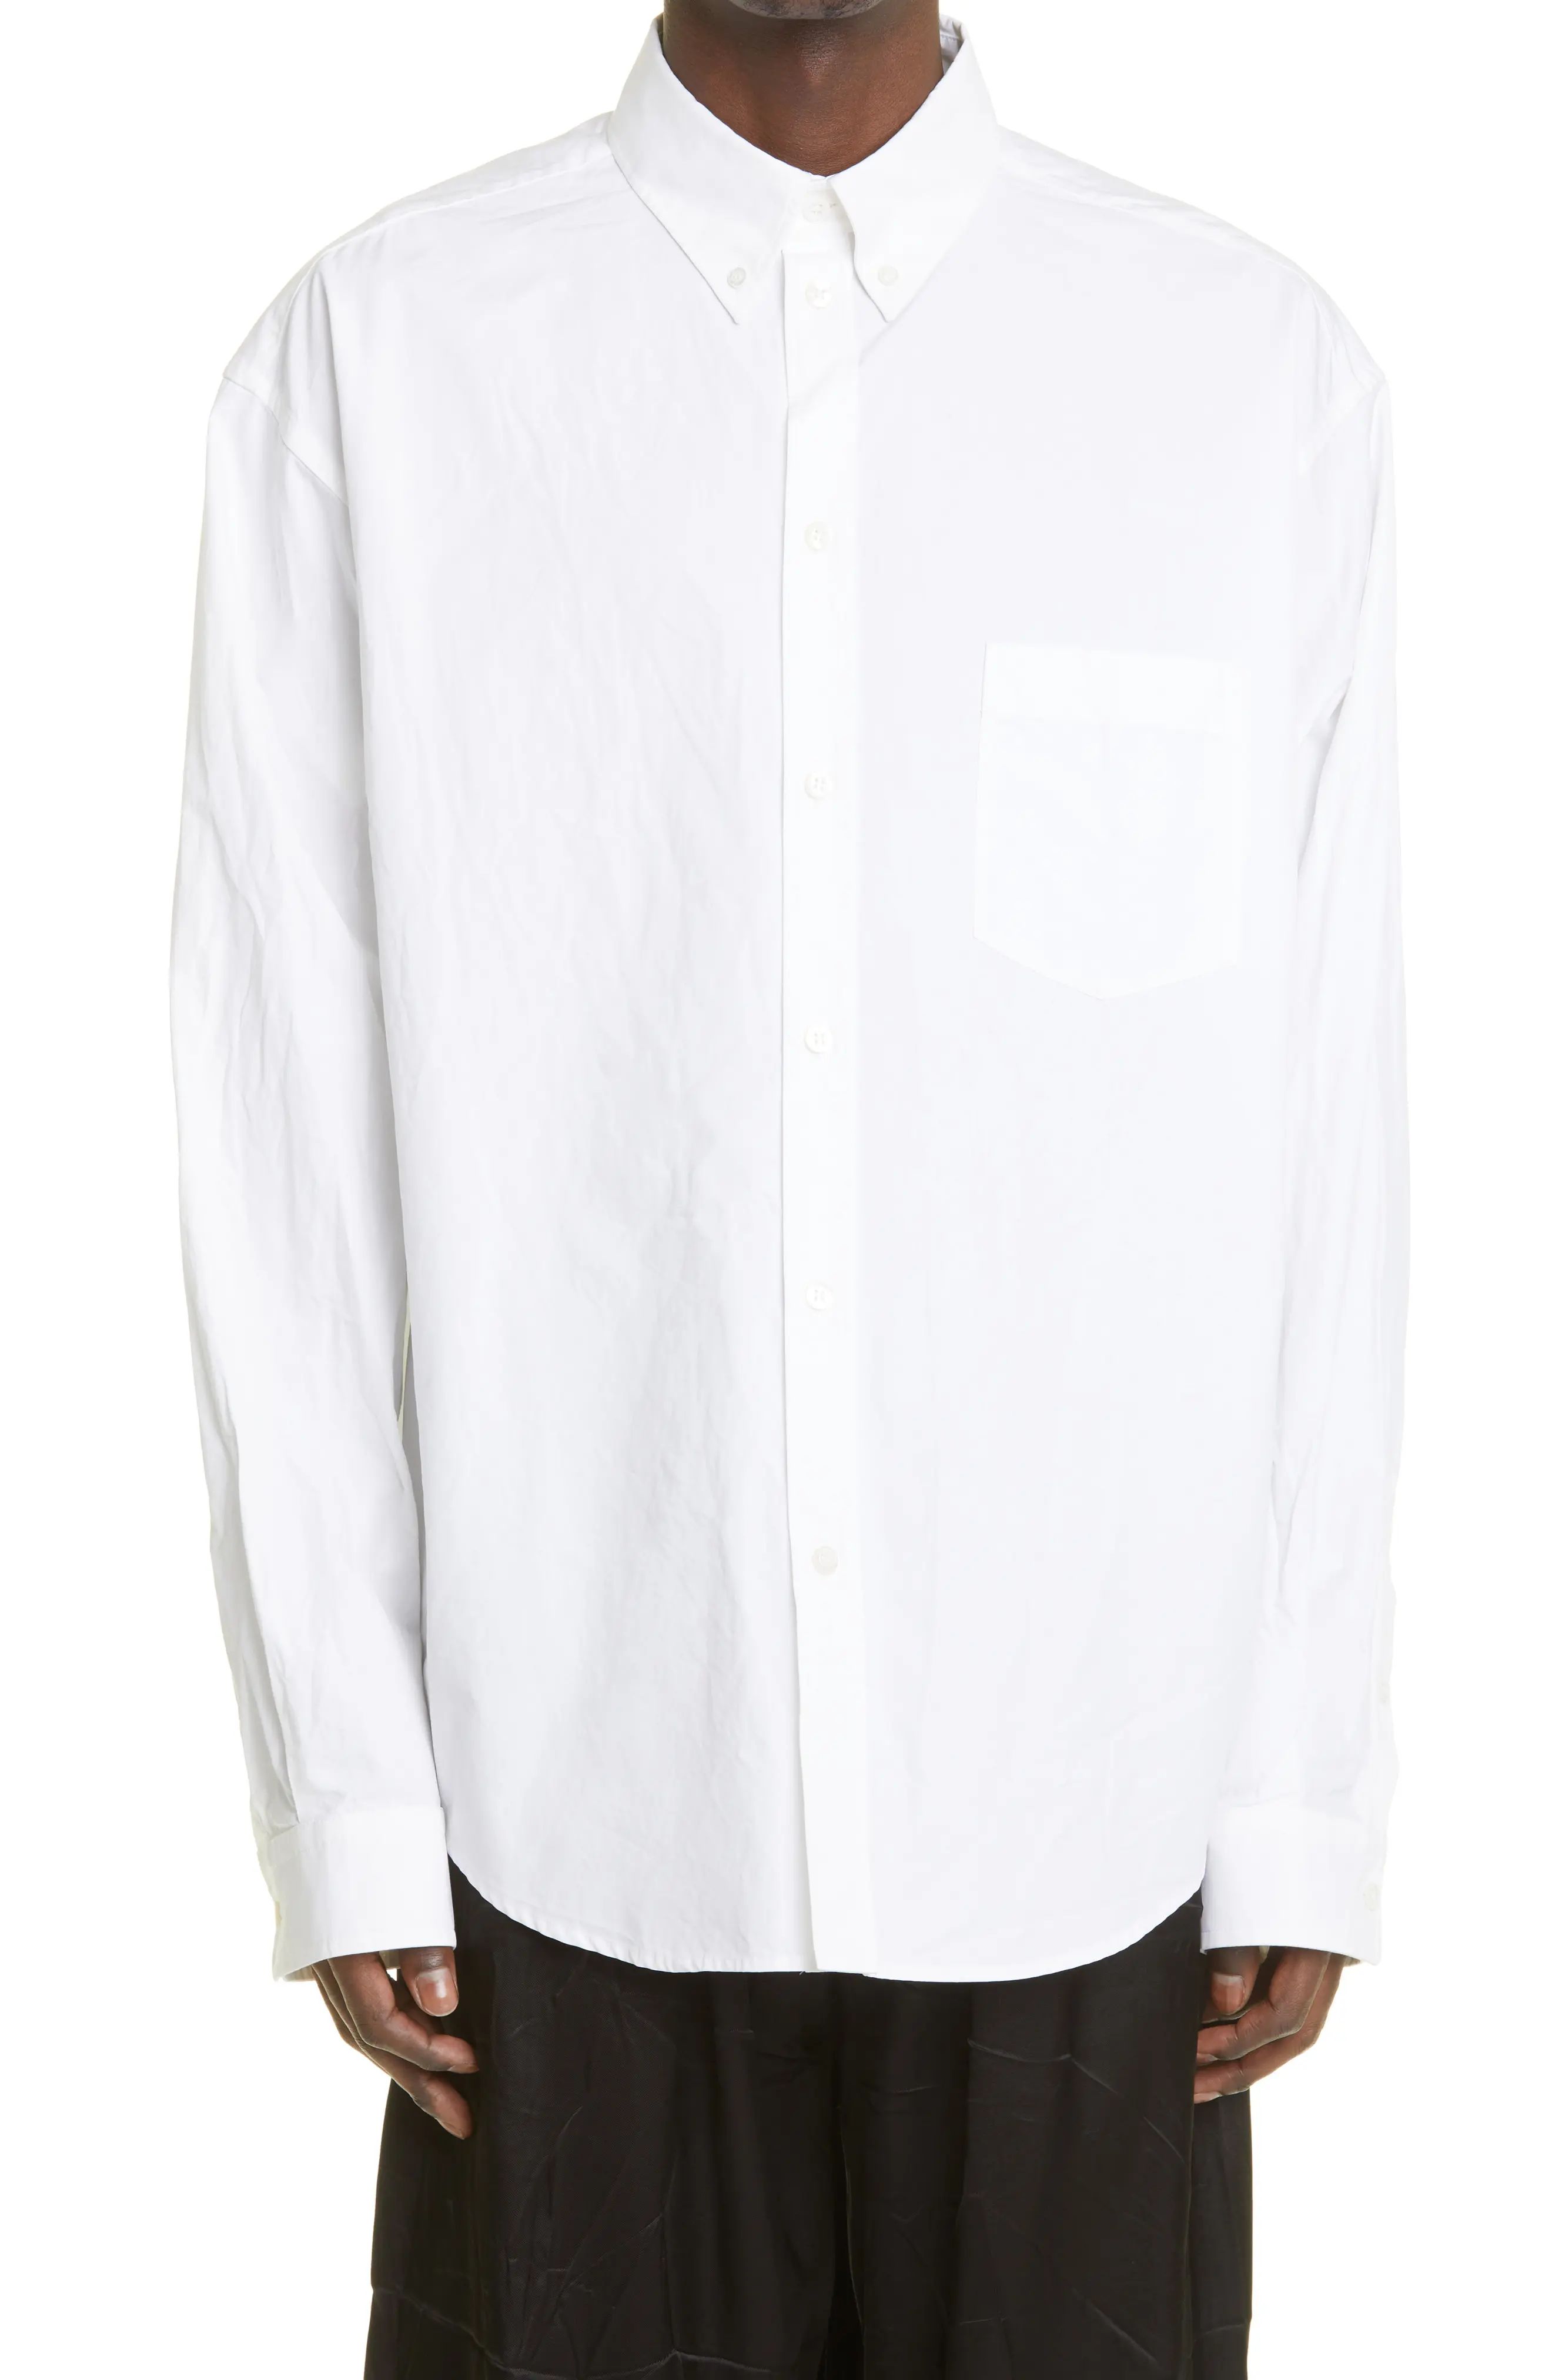 Balenciaga Basic White Button-Down Shirt at Nordstrom, Size 39 Eu | Nordstrom